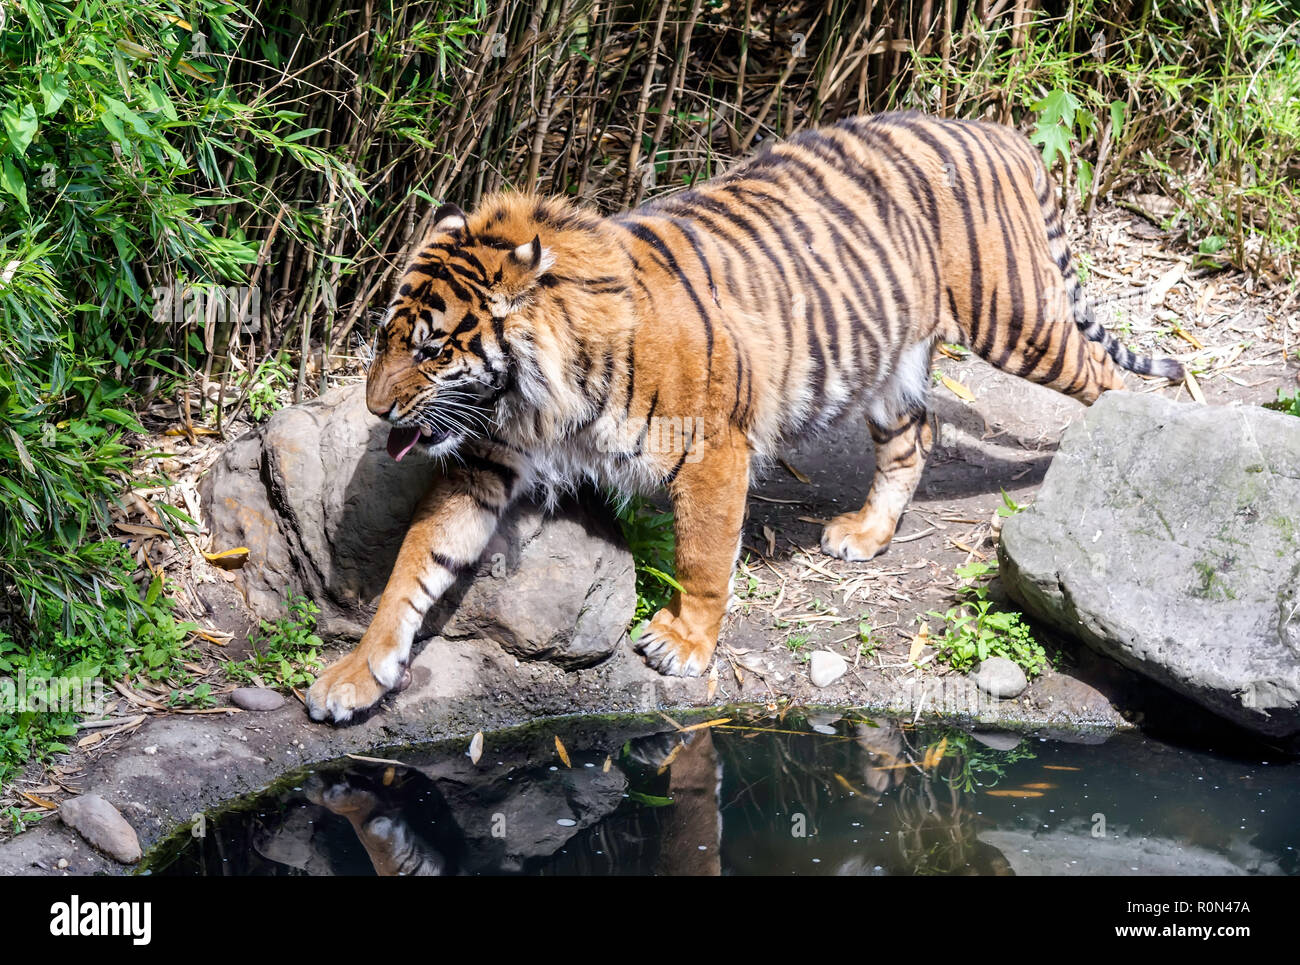 Tigre de Sumatra (Panthera tigris sondaica) caminando por el estanque con su lengua. El tigre tiene un cuerpo musculoso y es uno de los pocos gatos rayados Foto de stock